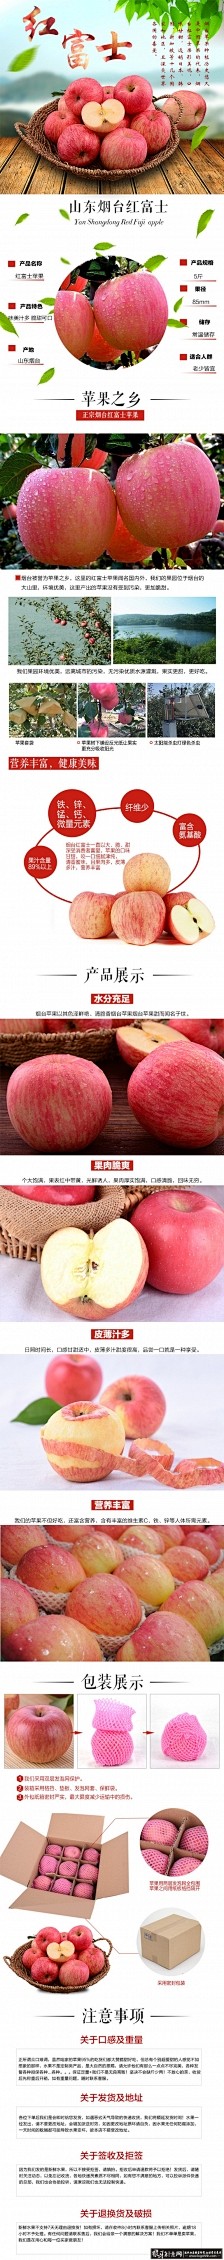 苹果详情页PSD 食品详情页 时尚清新苹...